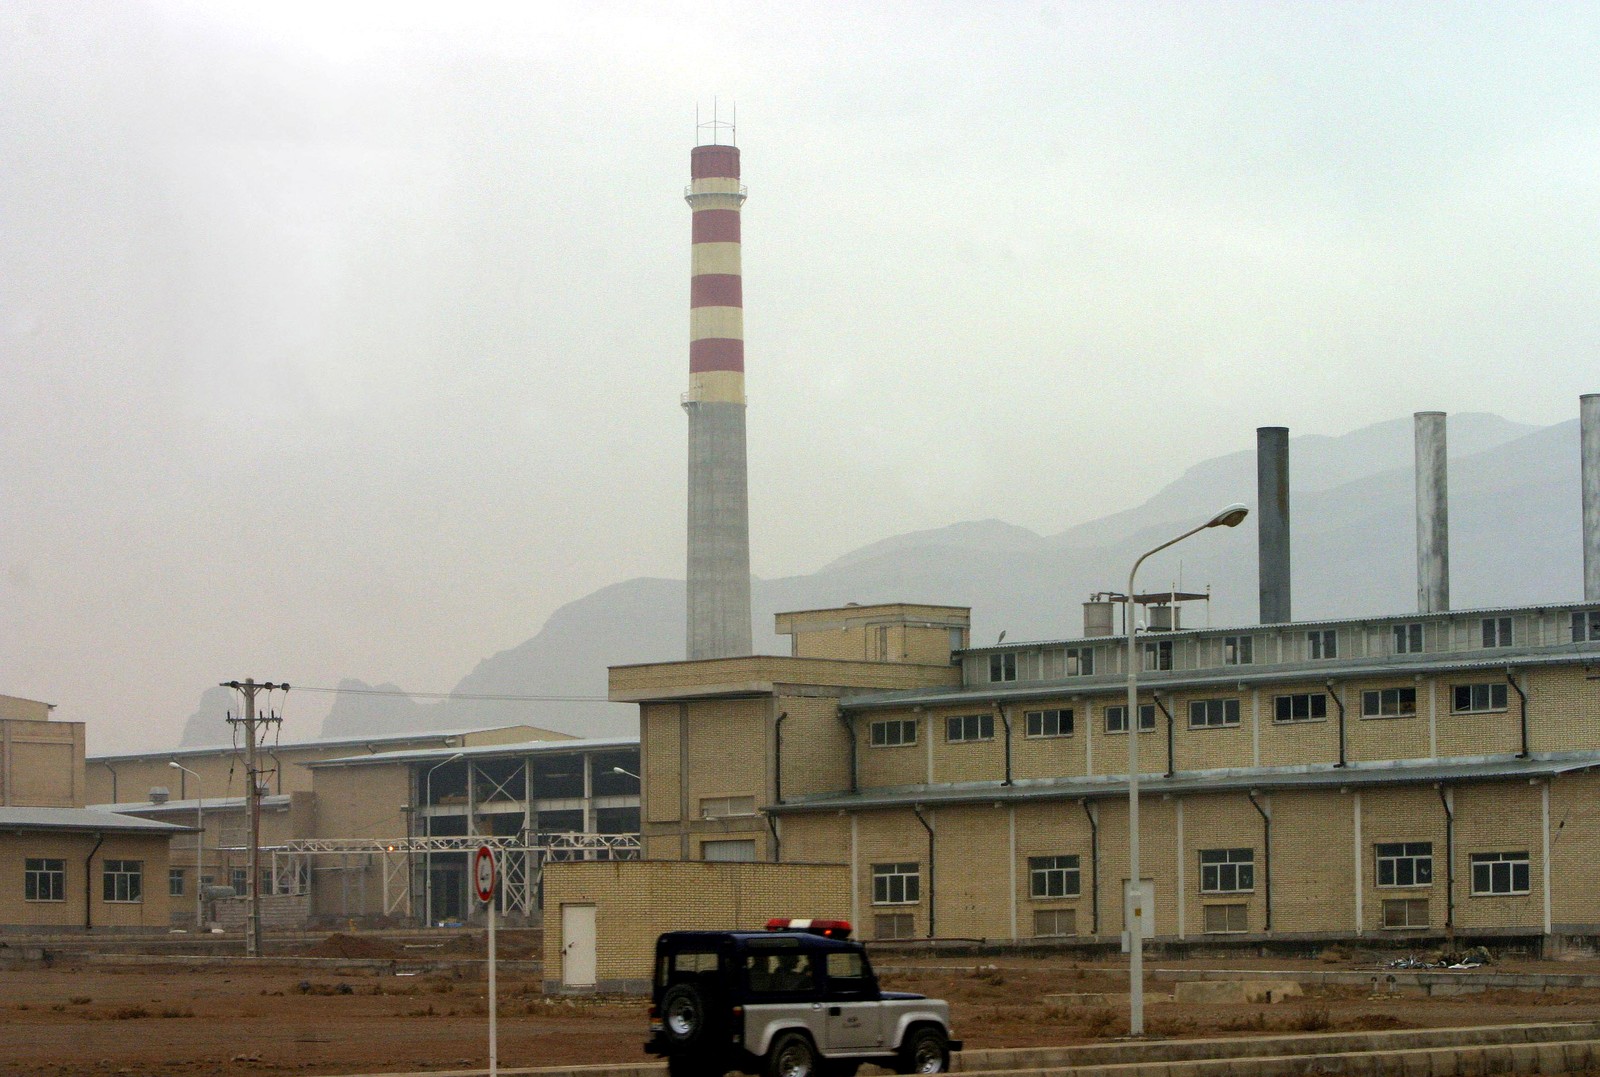 A instalação nuclear de Natanz fica a 300 km ao sul de Teerã, capital do IrãStringer - 20/11/2004